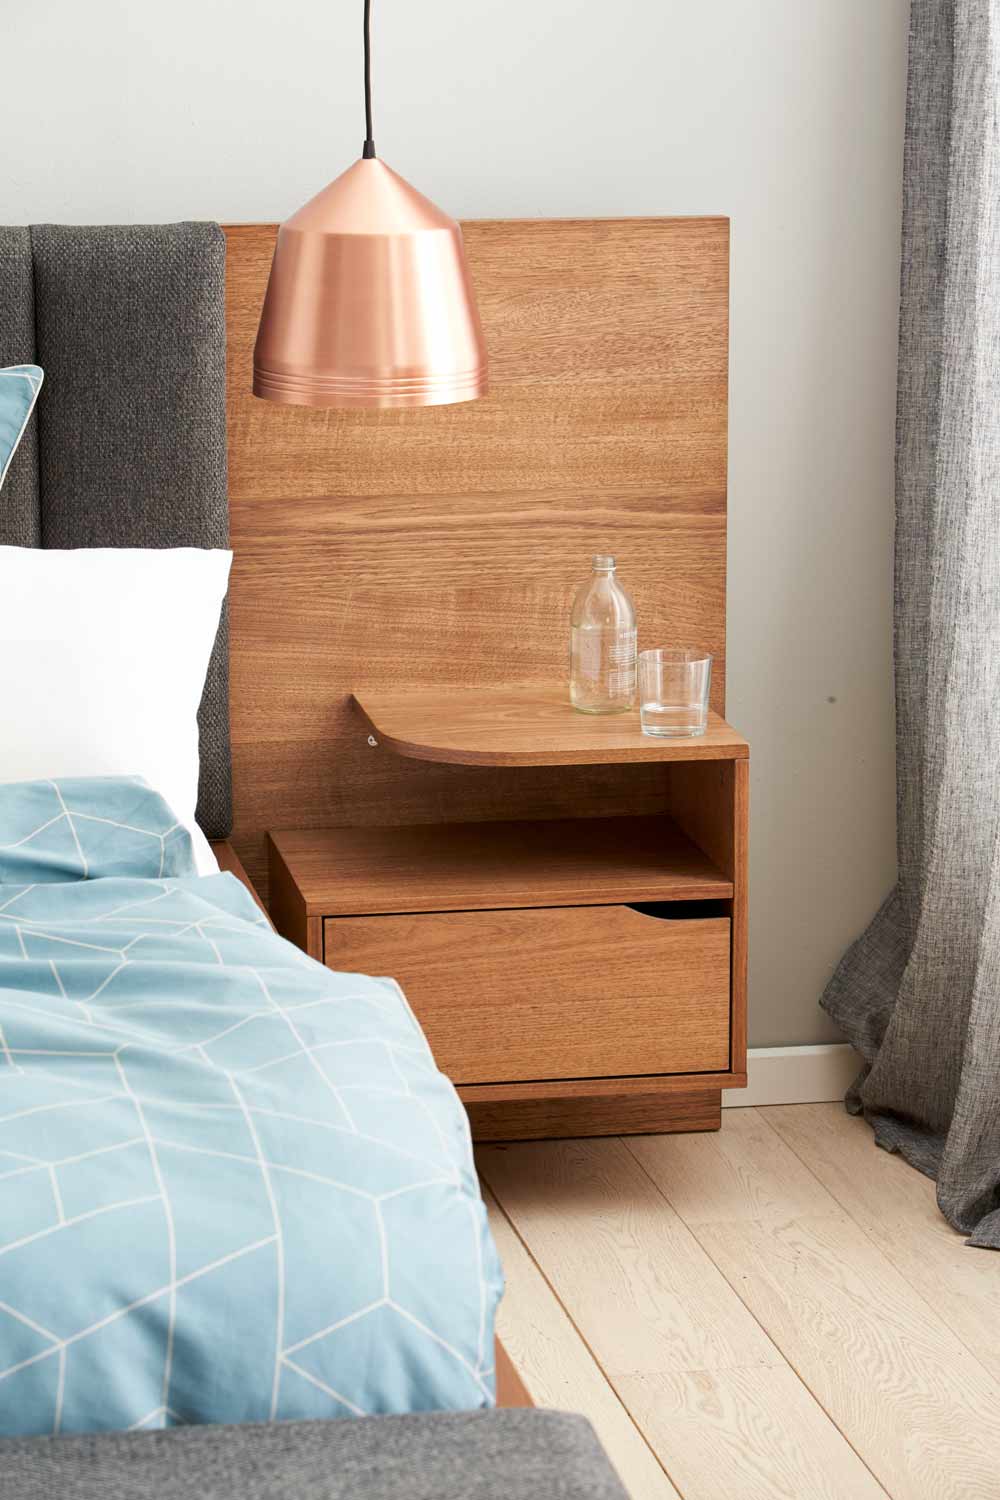 Kiểu táp đầu giường bằng gỗ nối liền với phần đầu giường bọc đệm xám vững chắc, với 3 vị trí có thể tận dụng để lưu trữ và sắp xếp đồ đạc, bao gồm bề mặt trên cùng, tầng giữa và ngăn kéo kín đáo.